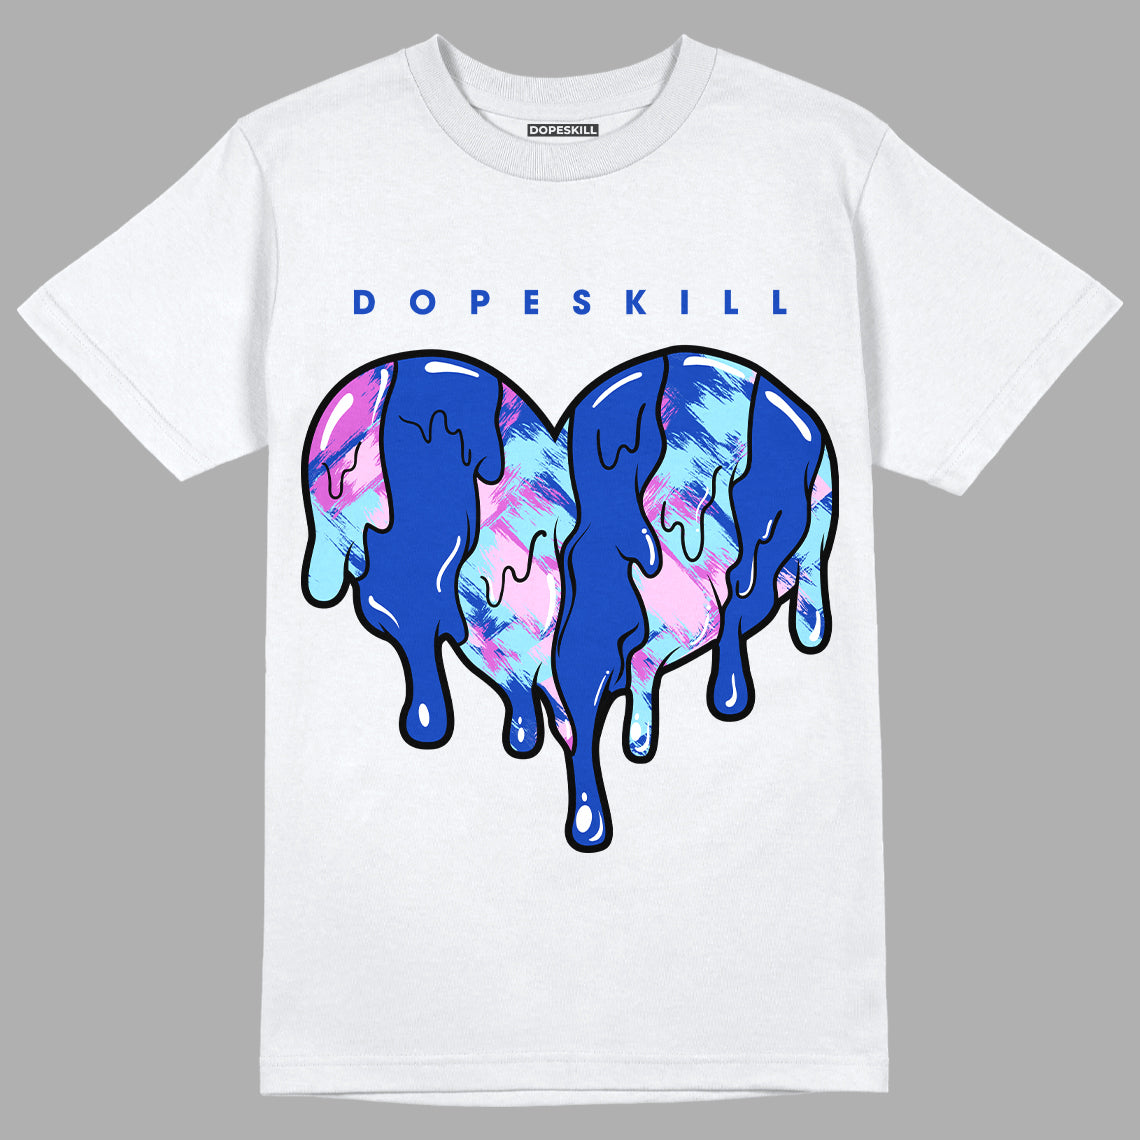 Hyper Royal 12s DopeSkill T-Shirt Slime Drip Heart Graphic - White